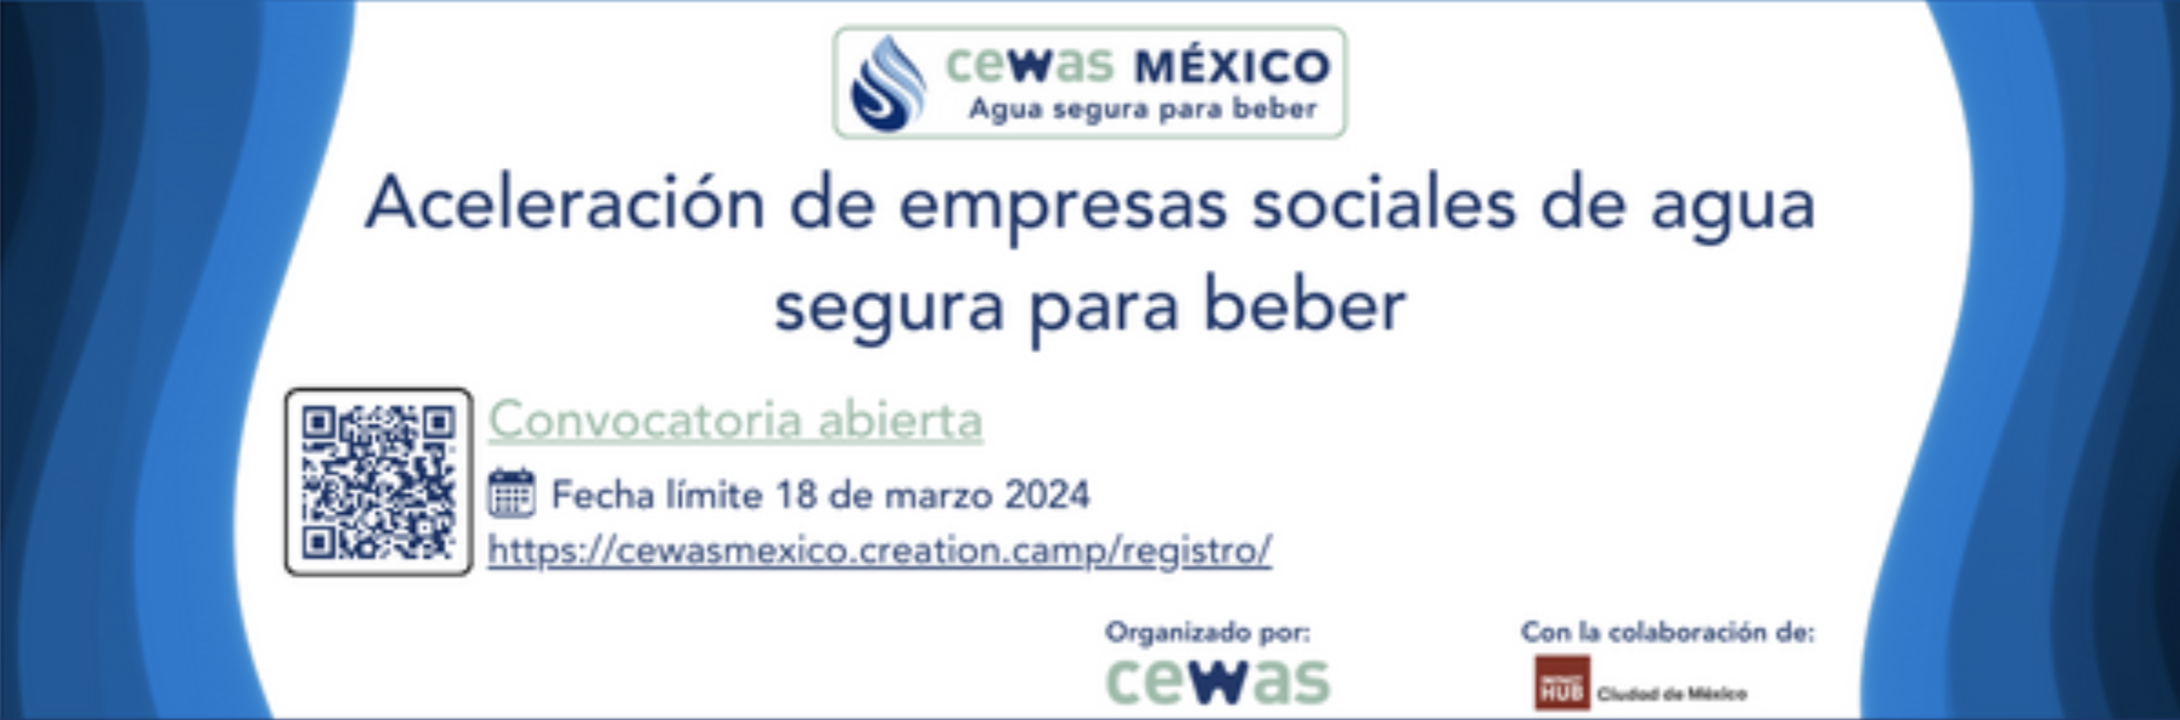 Convocatoria “Aceleración de empresas sociales de agua segura para beber” (CEWAS México)